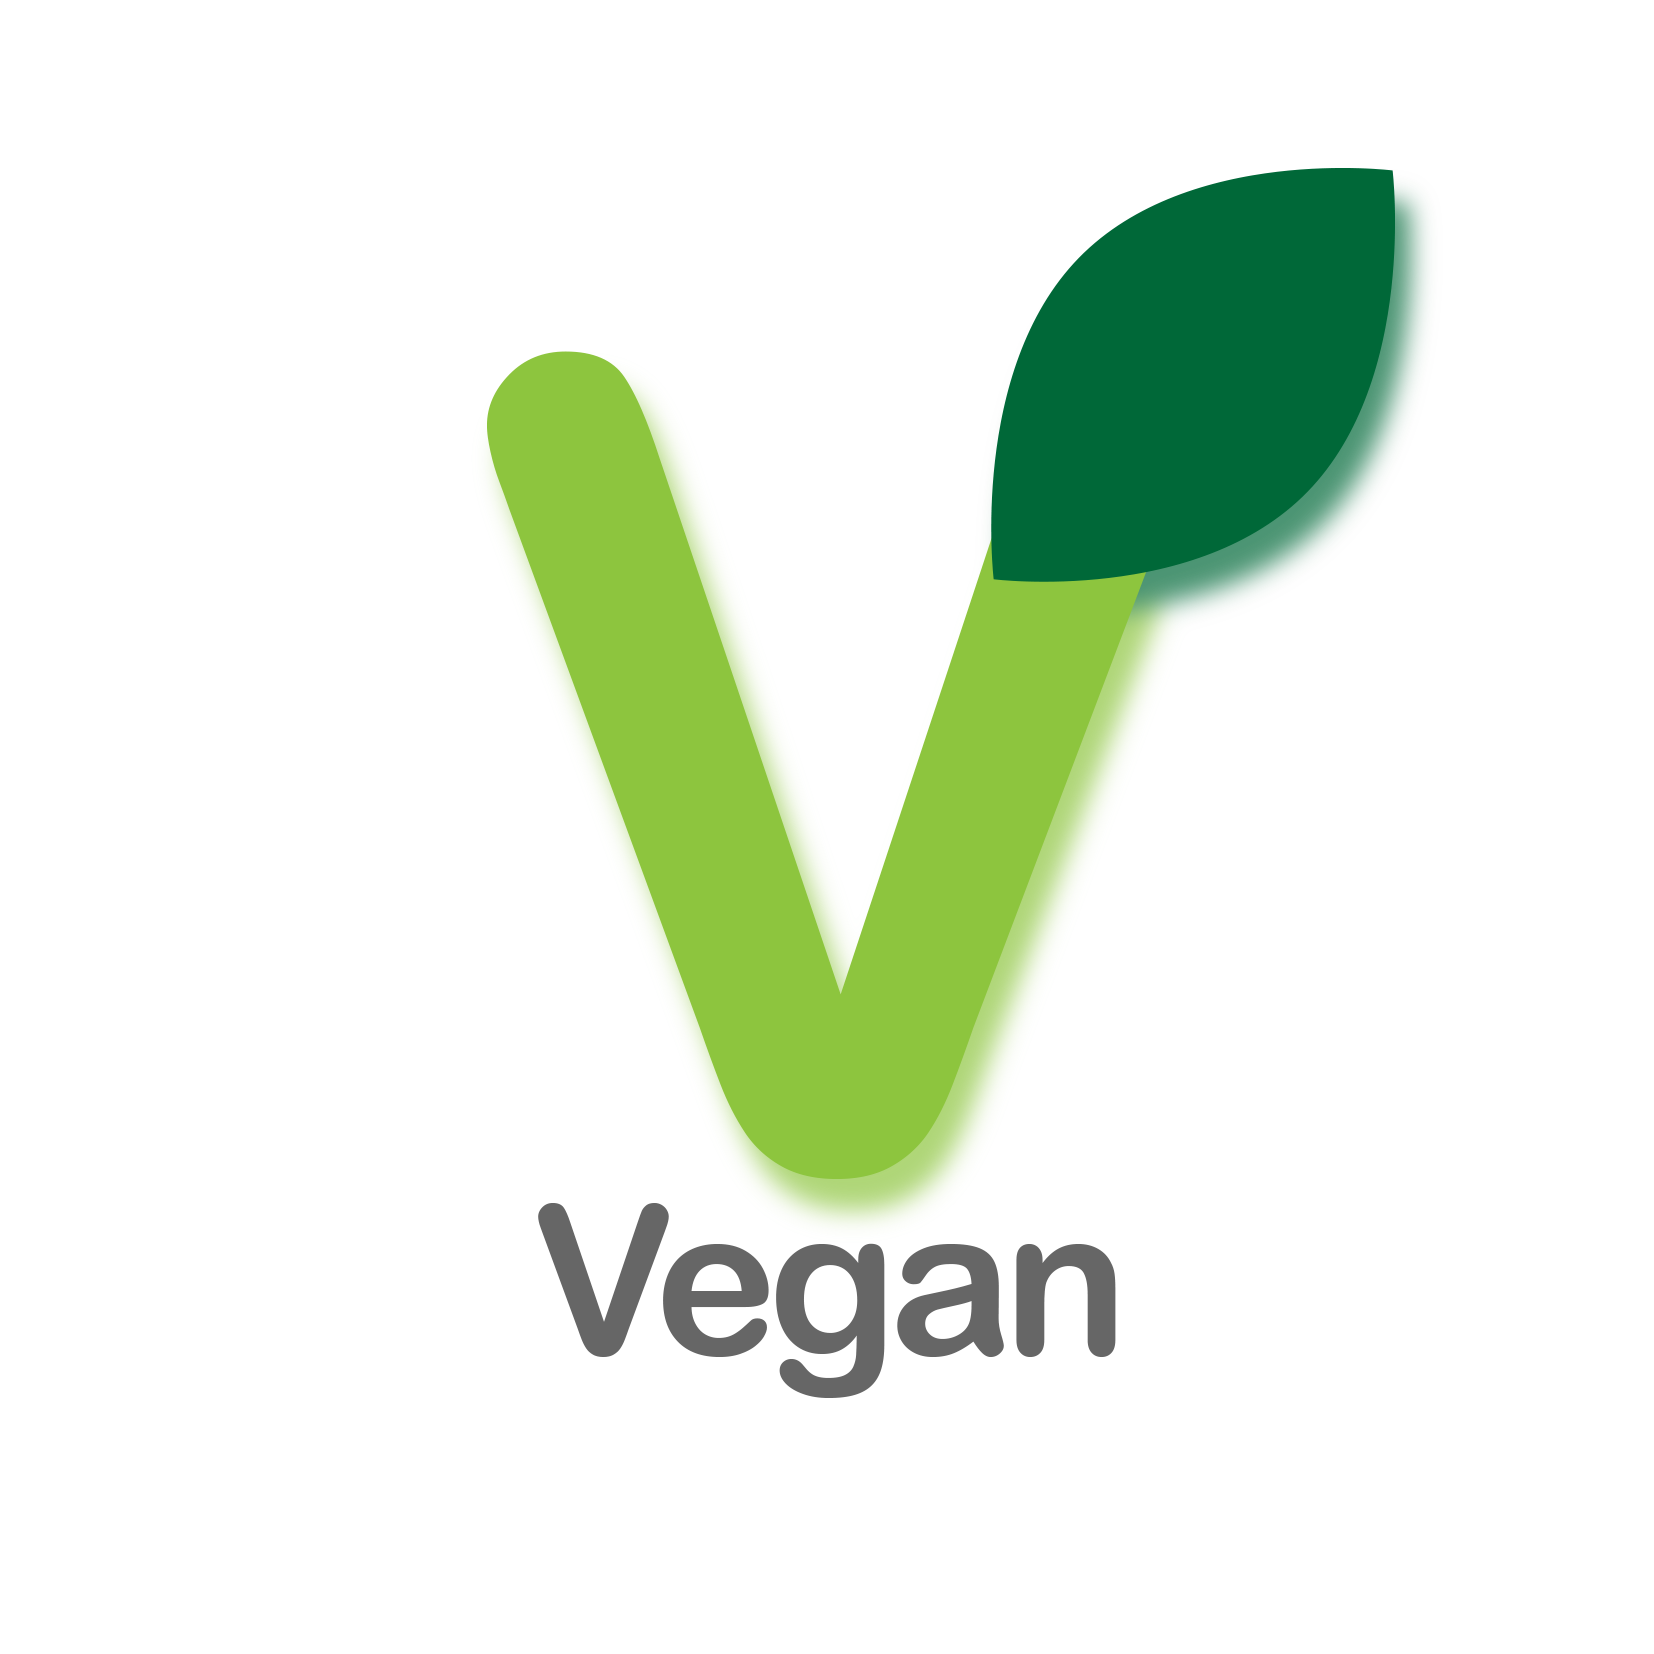 Vegan (Copy) (Copy)